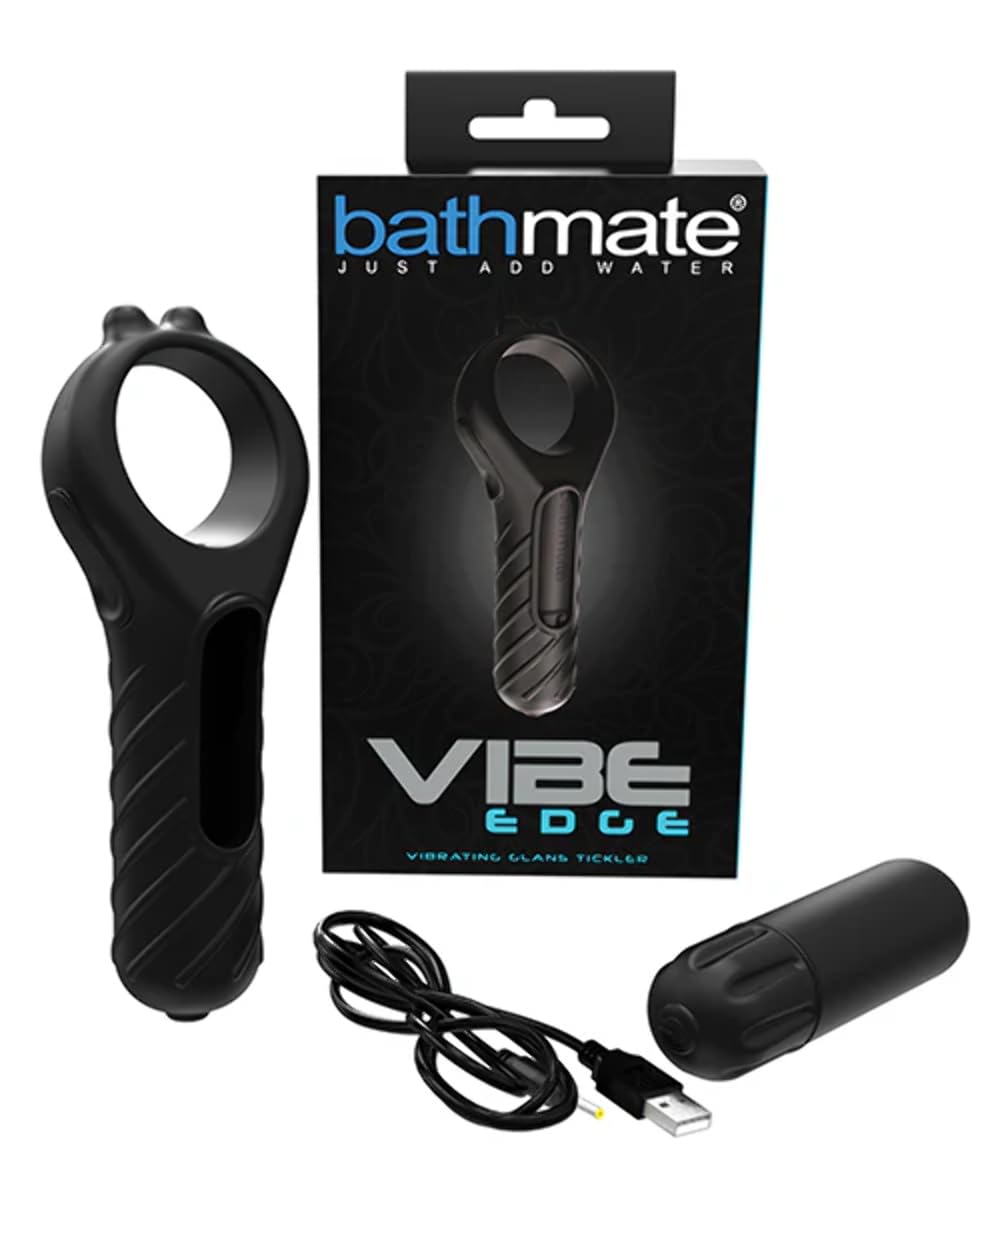 BATHMATE - - Vibe Edge